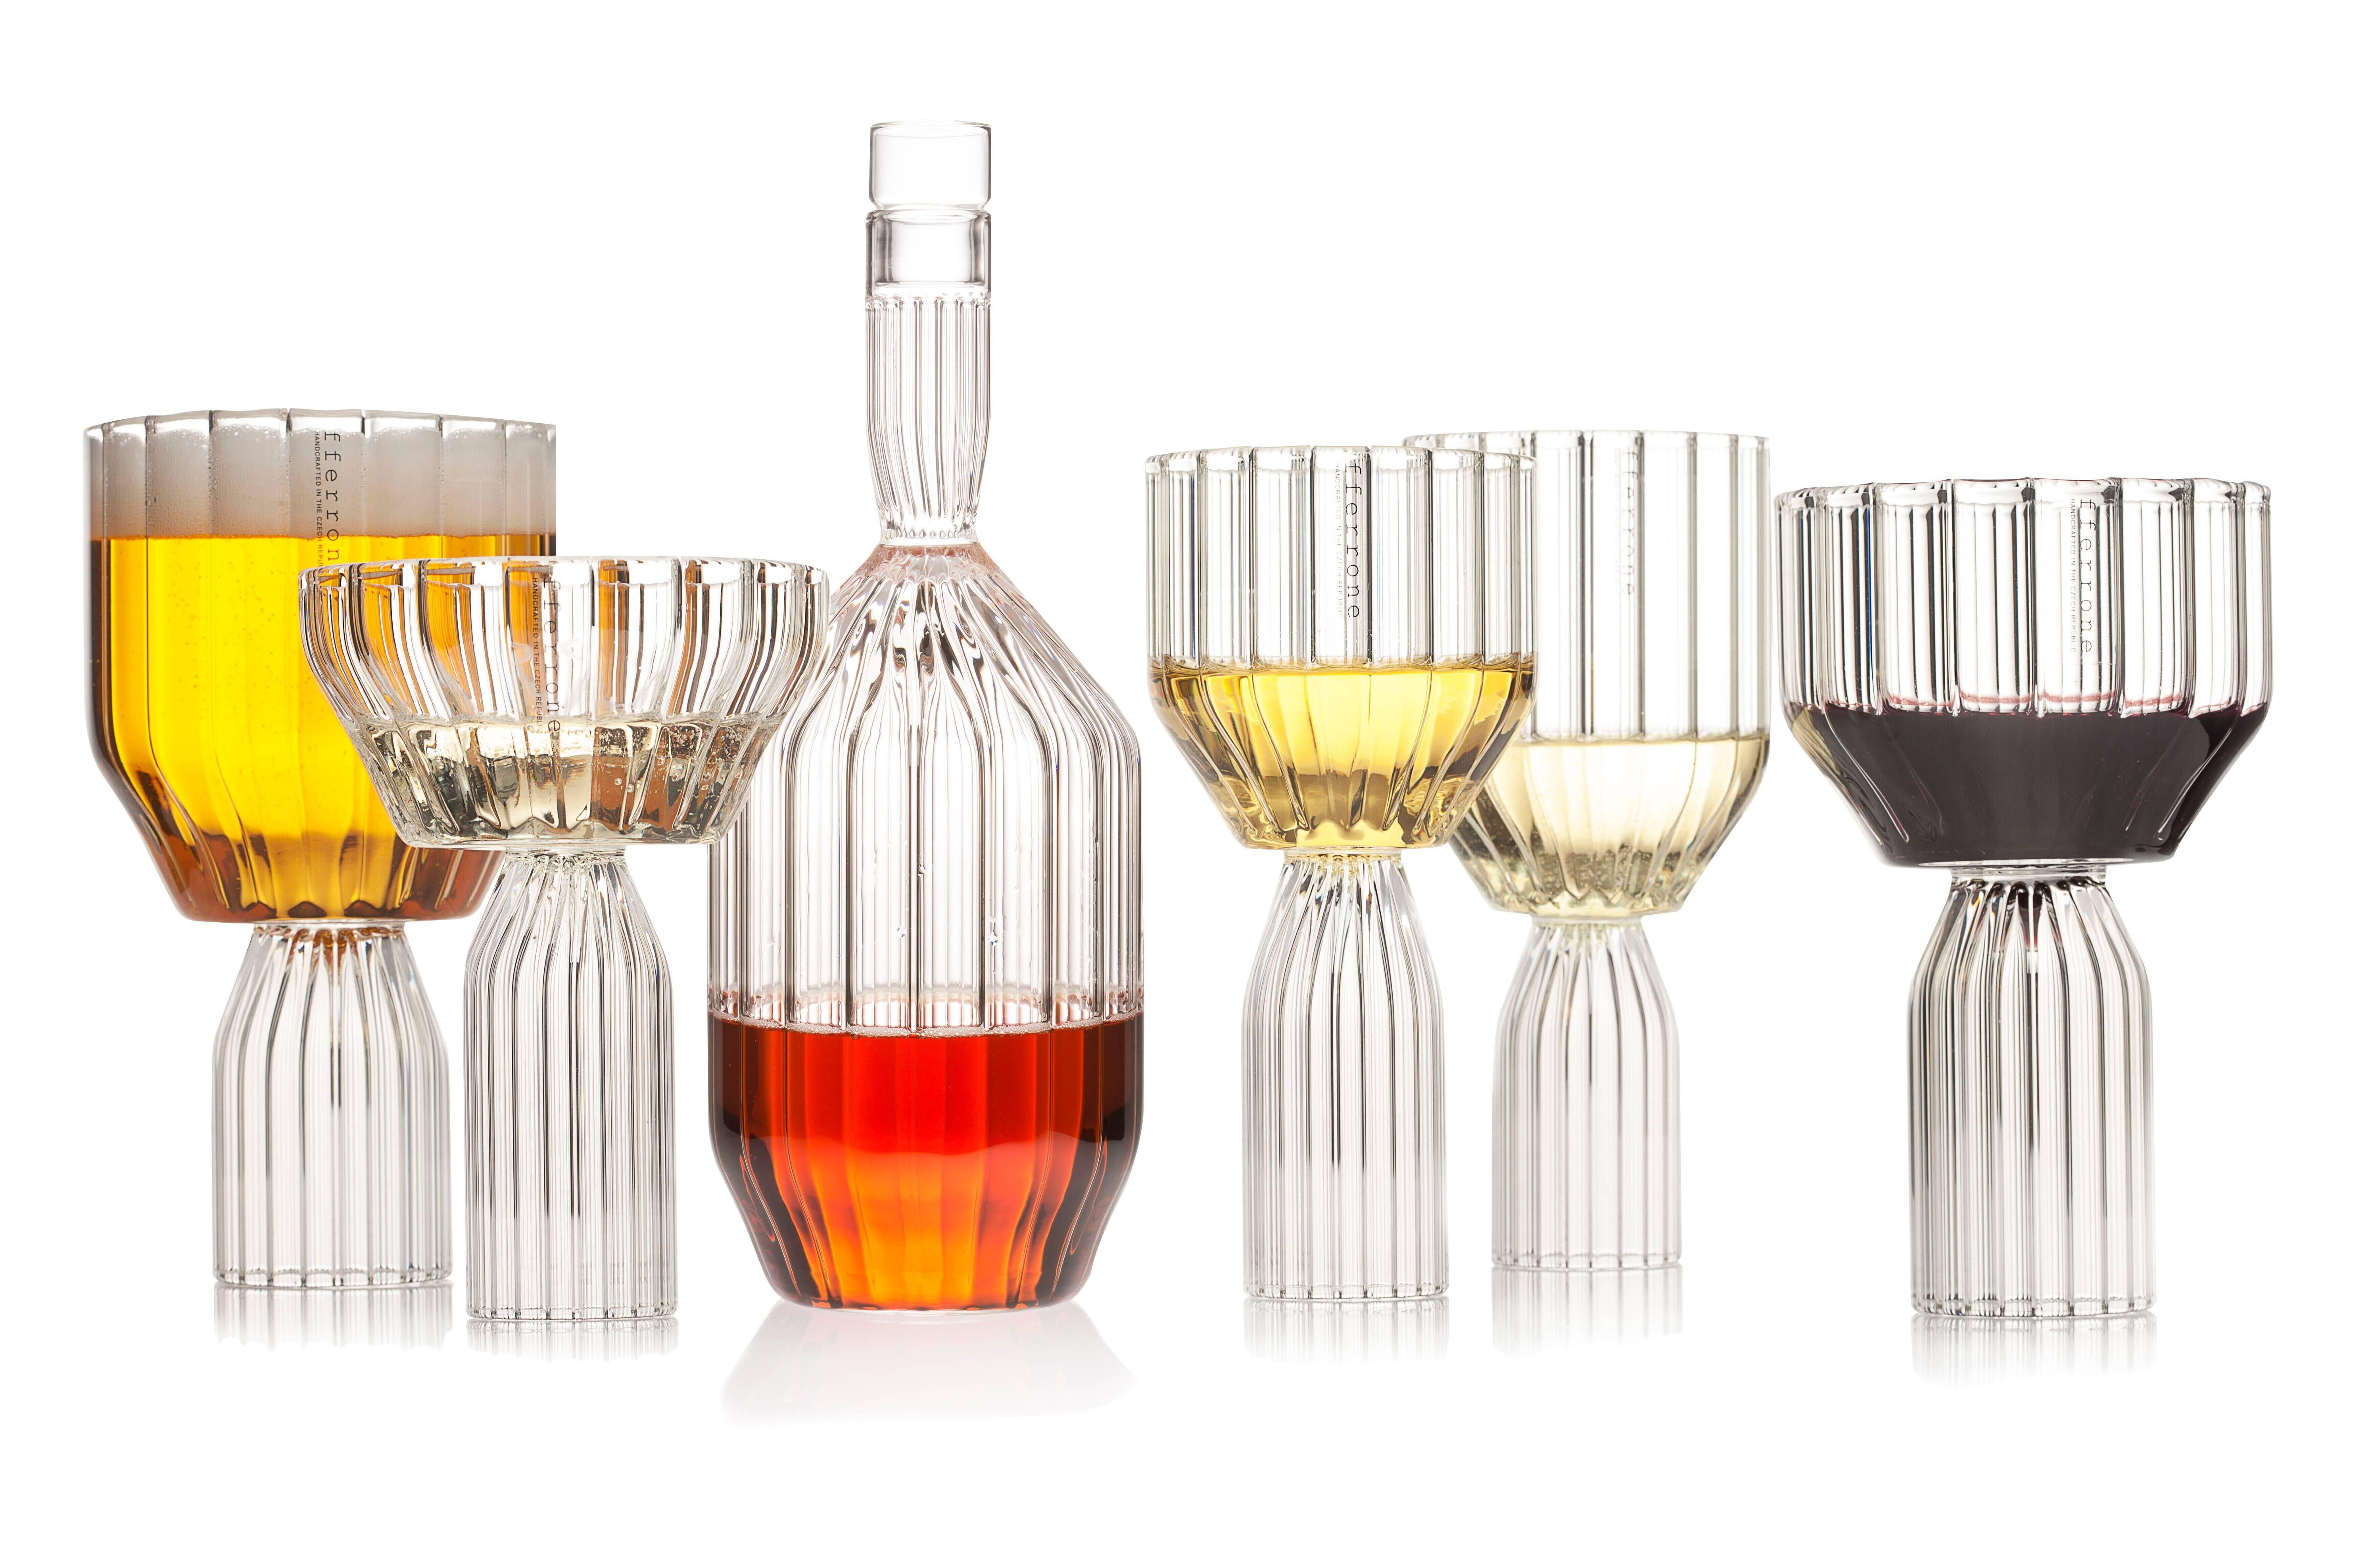 Une paire de verre tchèque contemporain fait à la main est le parfait grand gobelet à vin ou verre à cocktail pour les boissons.
La collection Margot, qui représente la version moderne du verre taillé, renverse la tradition avec des détails